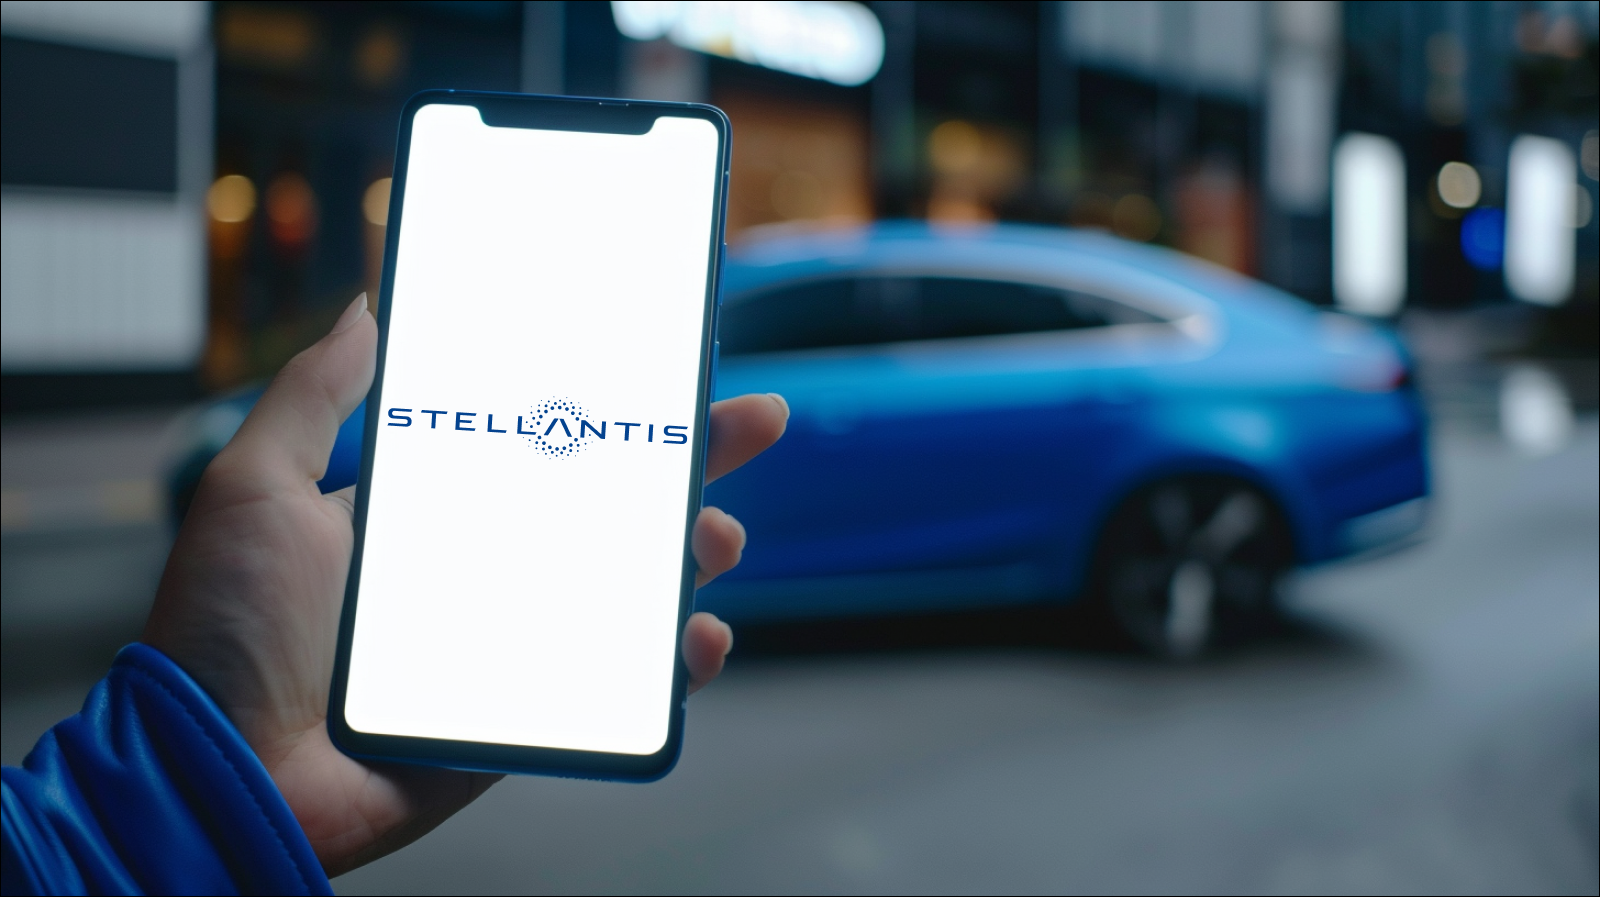 Eine Hand hält ein Smartphone mit eingeschaltetem Bildschirm, der das Logo von Stellantis zeigt, vor einem unscharfen Hintergrund mit einem blauen Auto.